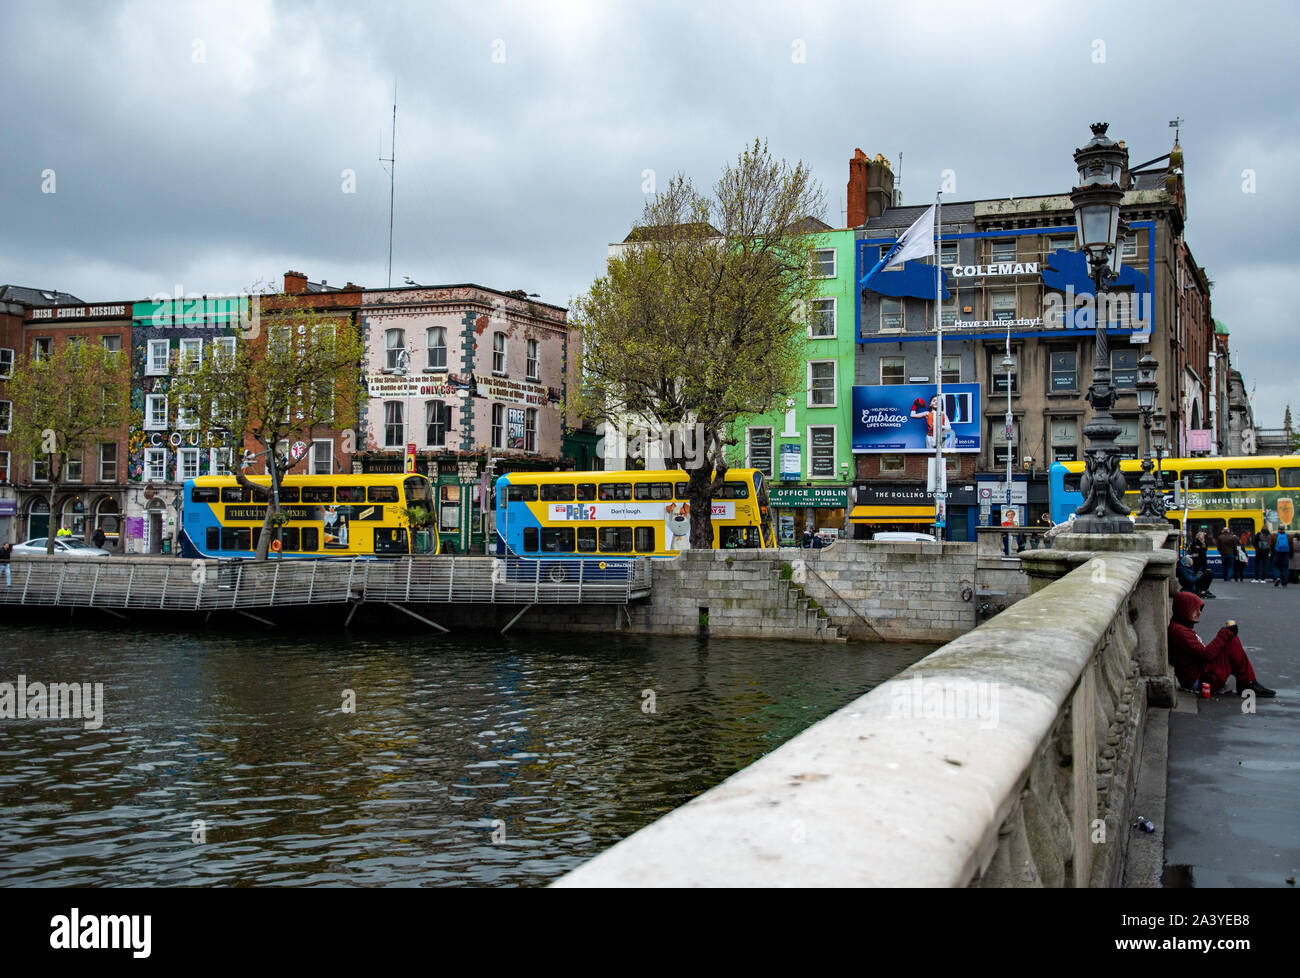 Edifici e ponti sul fiume Liffey, gente e autobus turistici tipici della città in una giornata nuvolosa. Dublino, Irlanda. Foto Stock